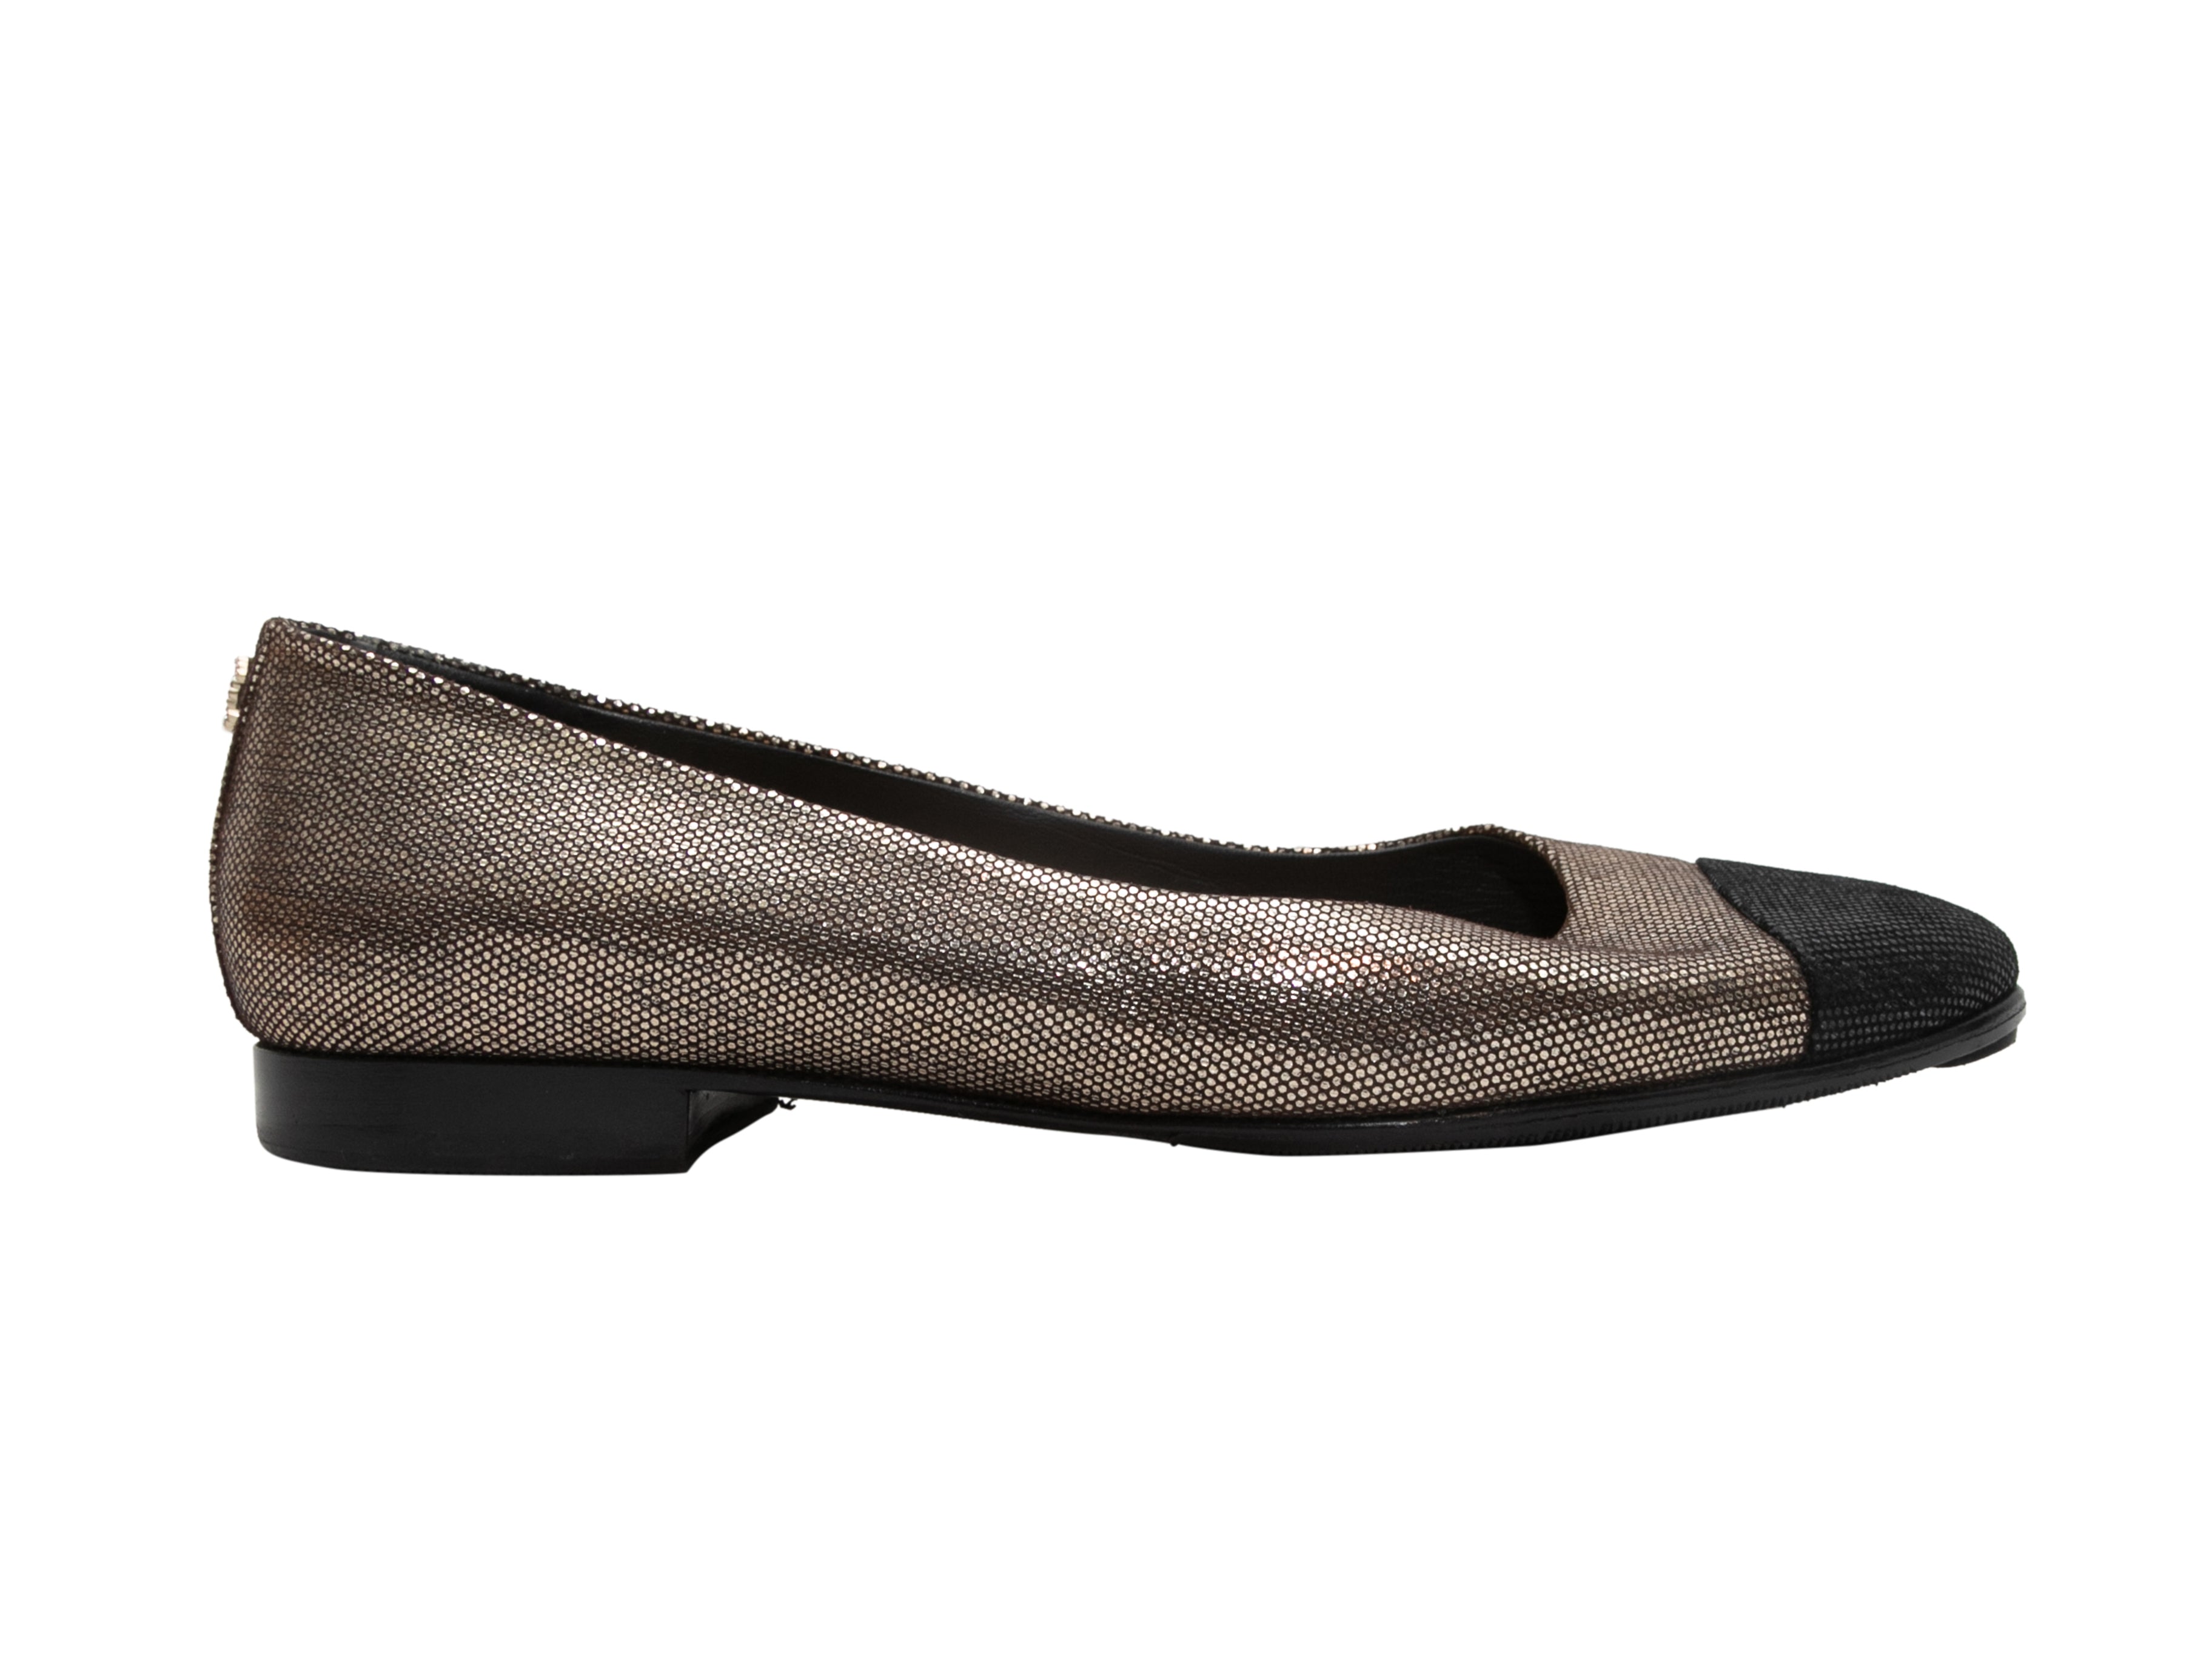 Silver & Black Chanel Cap-Toe Flats Size 39.5 - Atelier-lumieresShops Revival